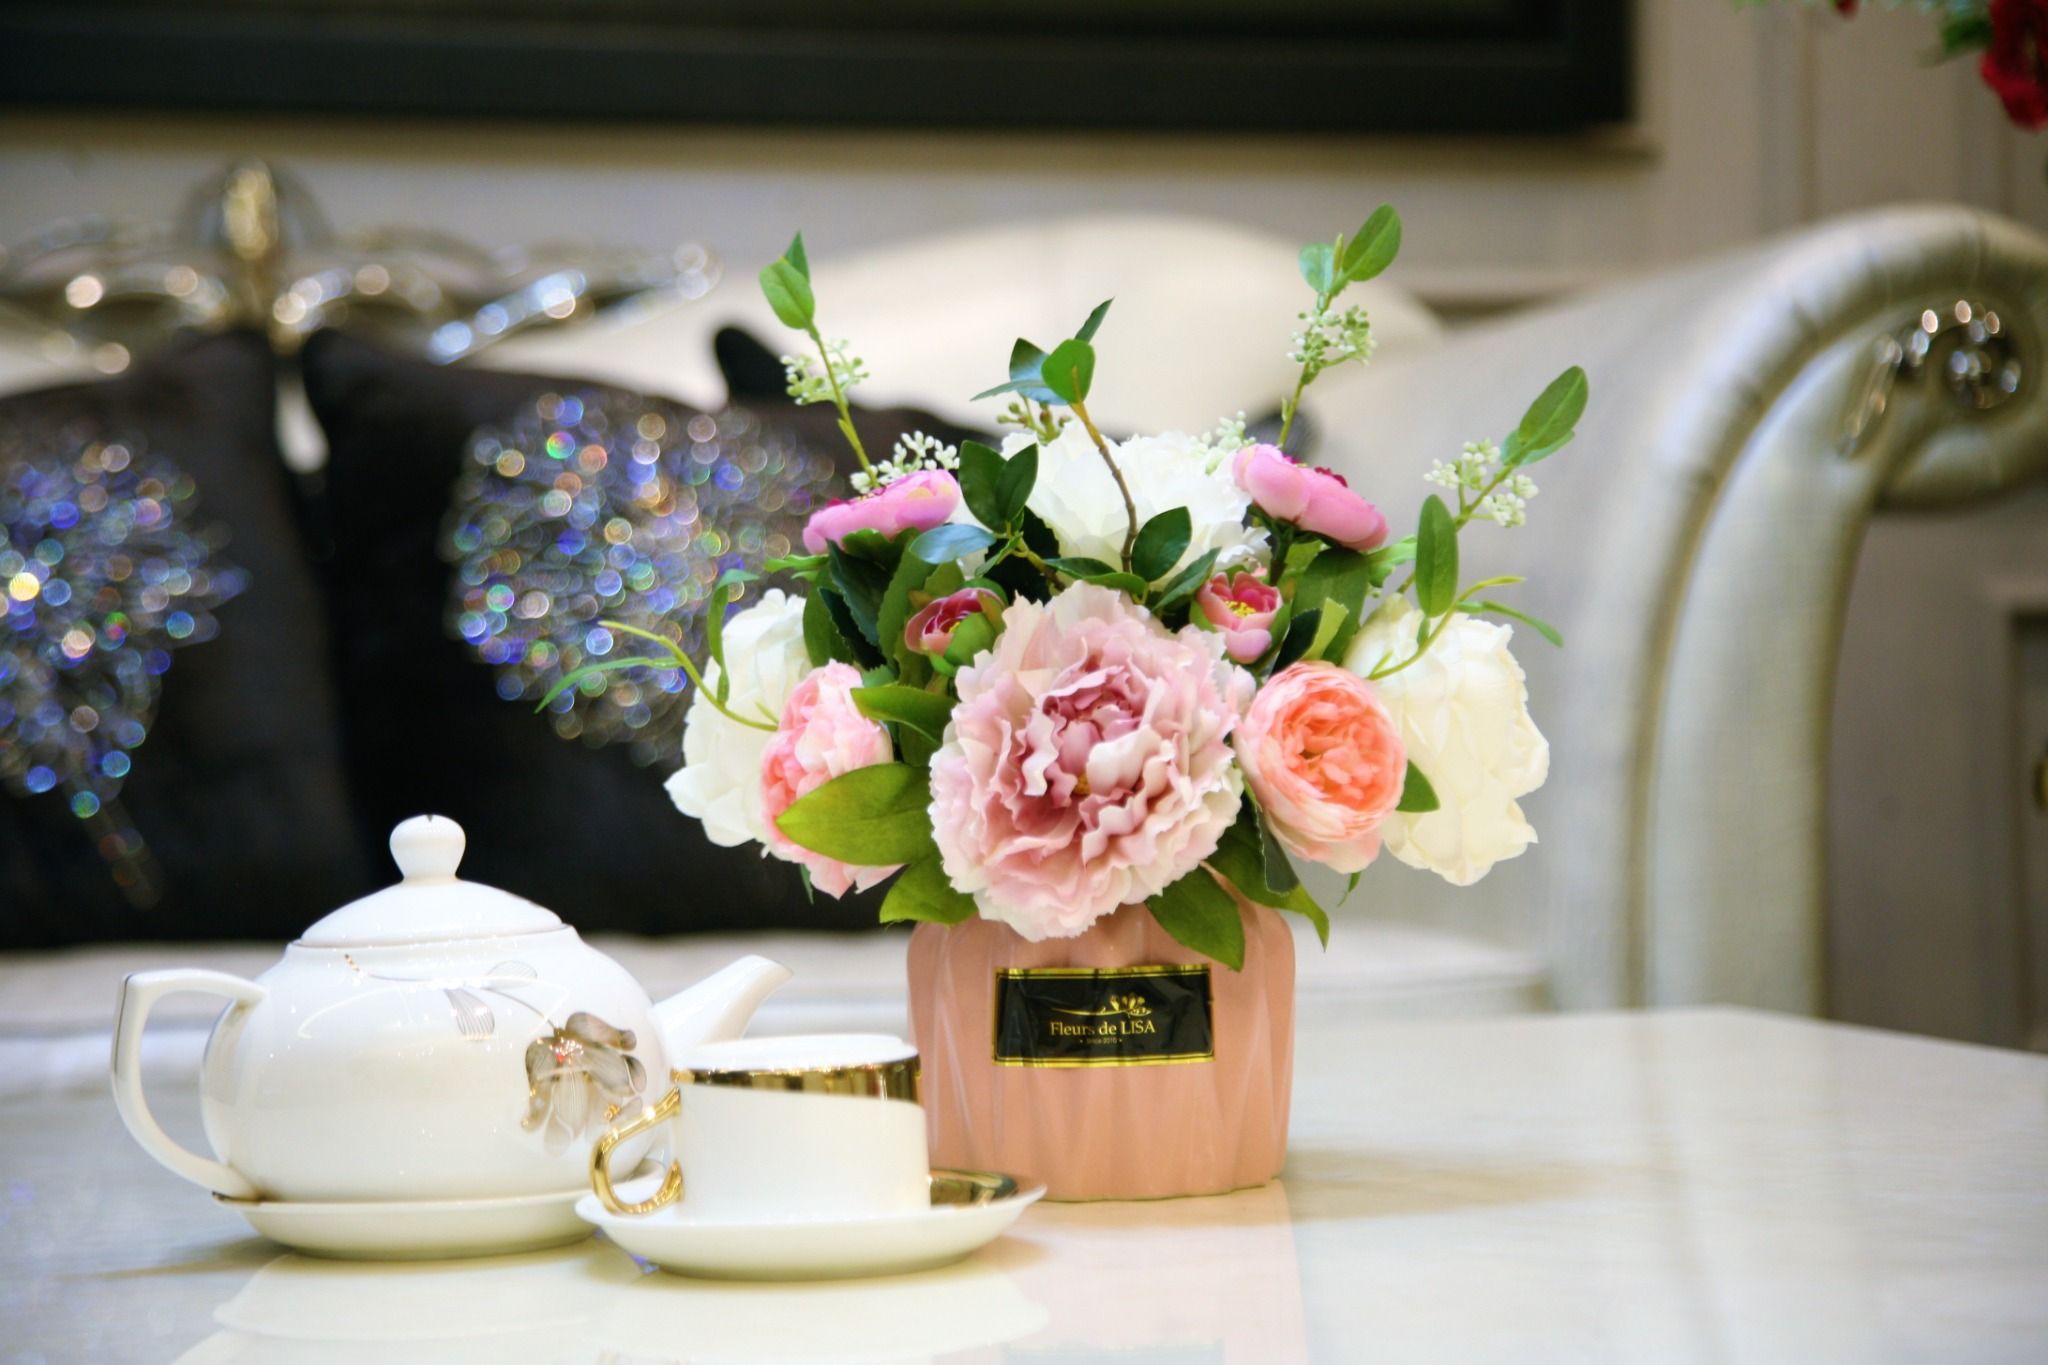  Marie5 - Bình hoa trang trí đẹp nhất 